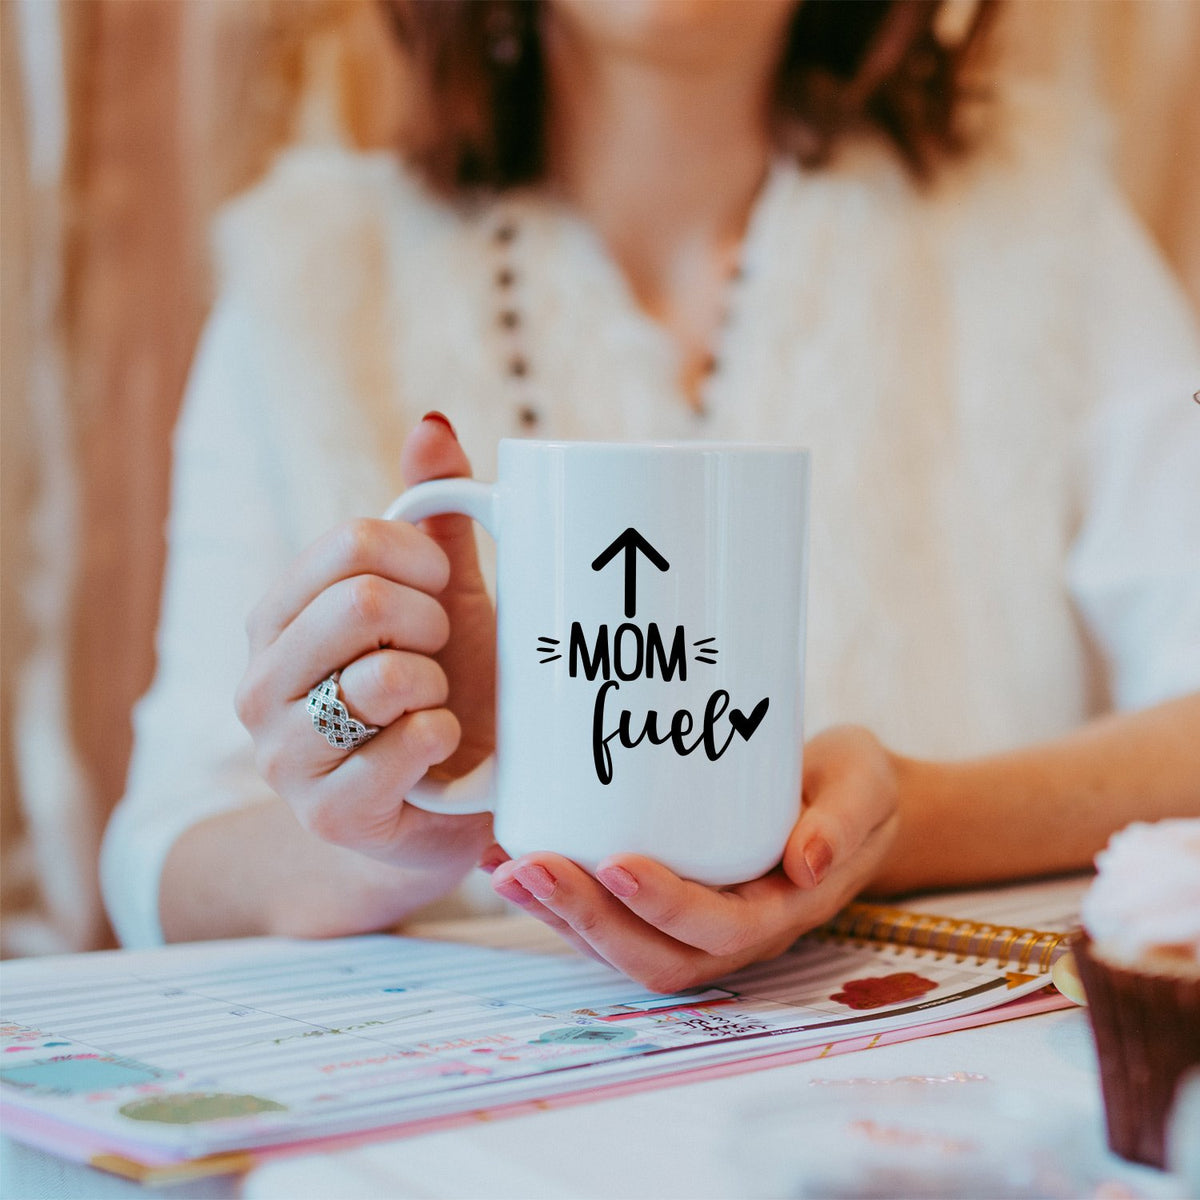 Mom Fuel - Ceramic Coffee Mug